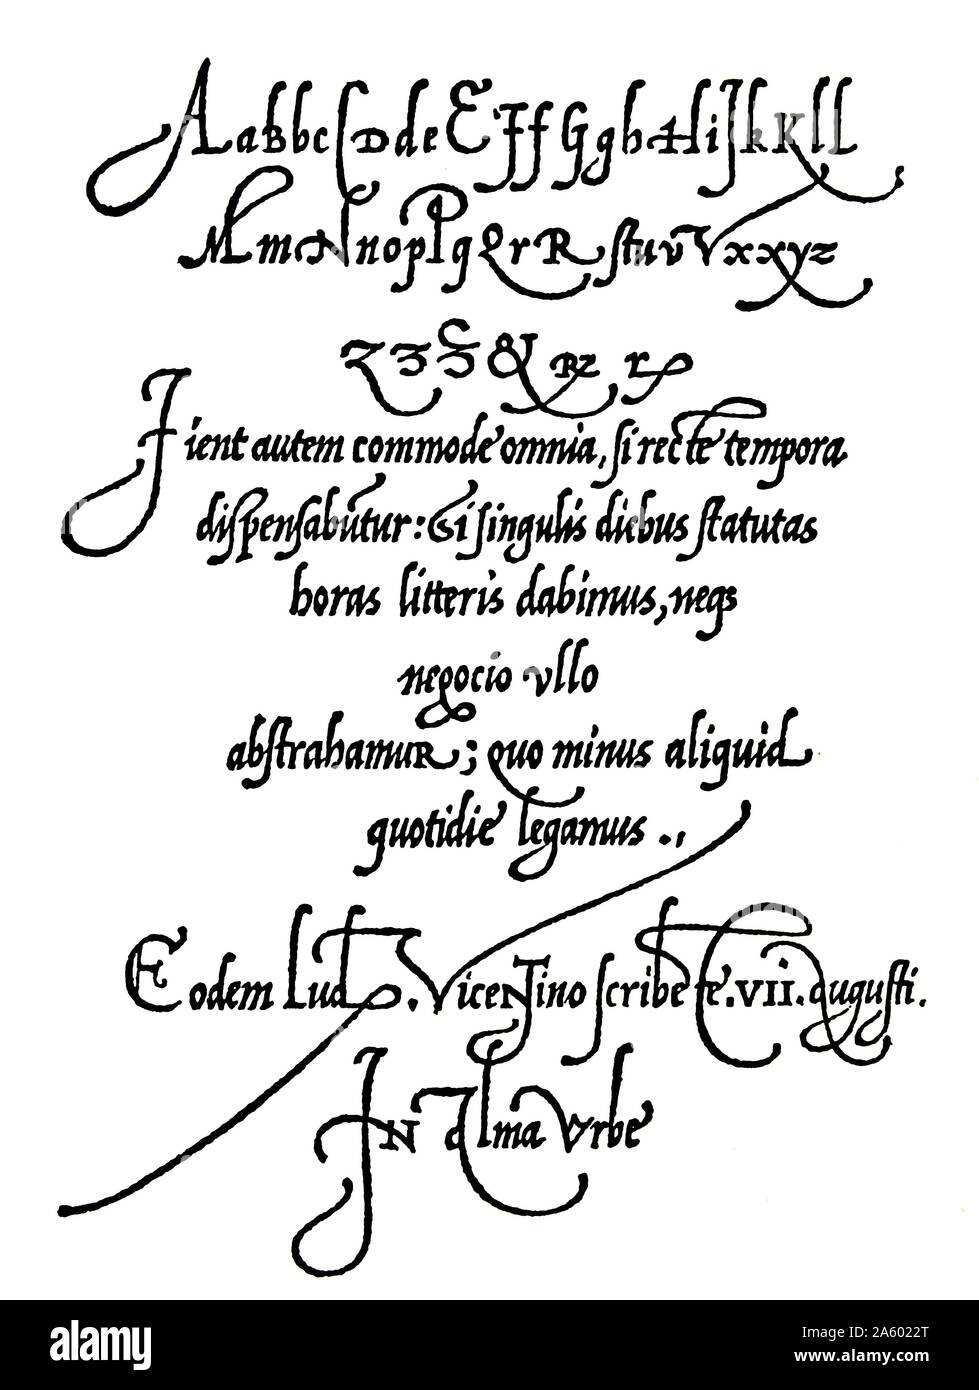 Seite aus Arrighis Operina schreiben Handbuch 1539 zeigt Handschrift Stile des 16. Jahrhunderts, Frührenaissance. Stockfoto